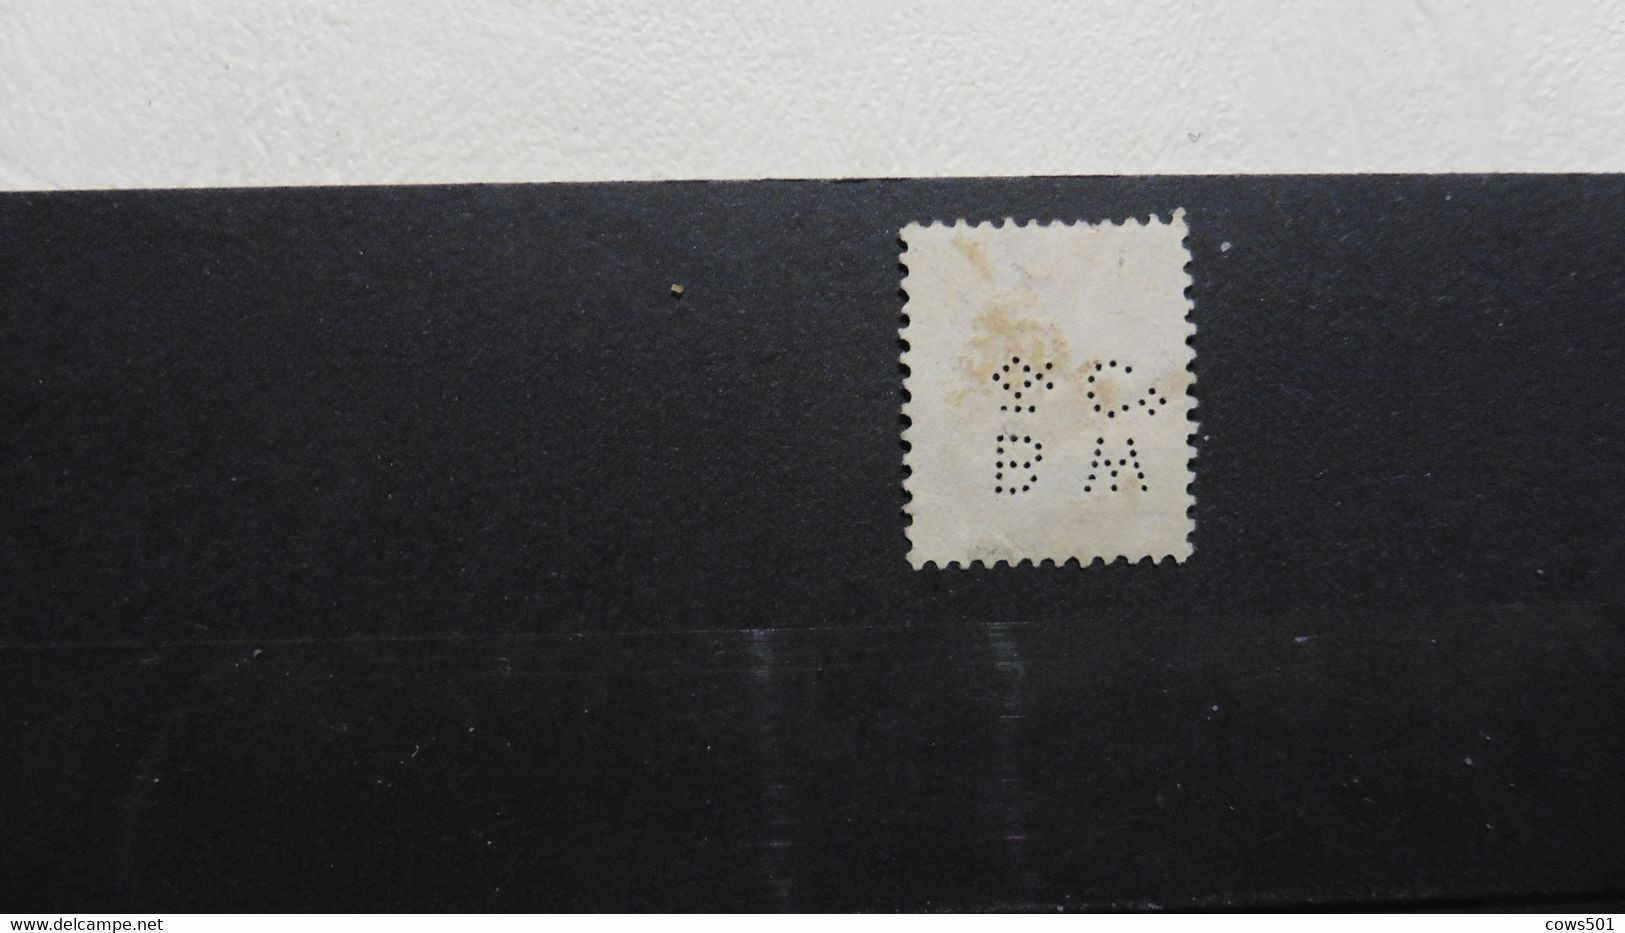 Océanie > Australie :timbre Perforé Oblitéré South Wales - Perforés